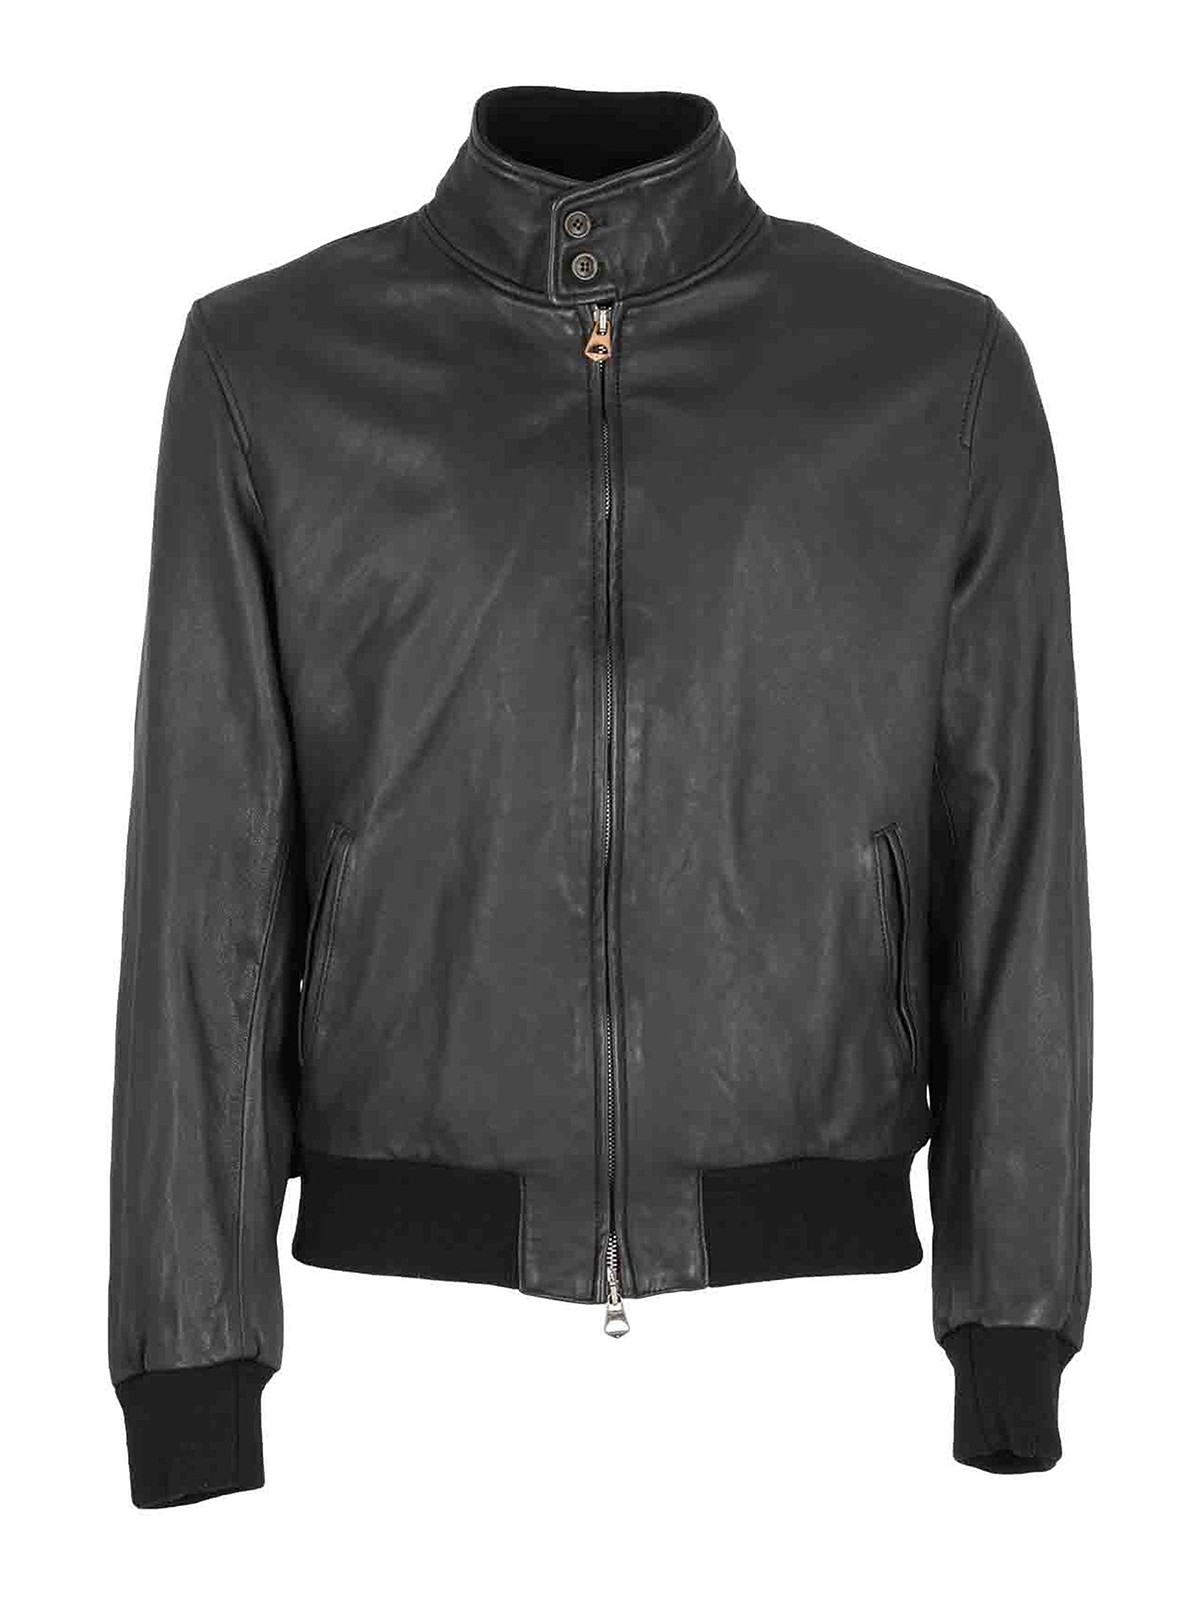 Stewart - Jeff black leather jacket - leather jacket - JEFFMINNESOTANERO